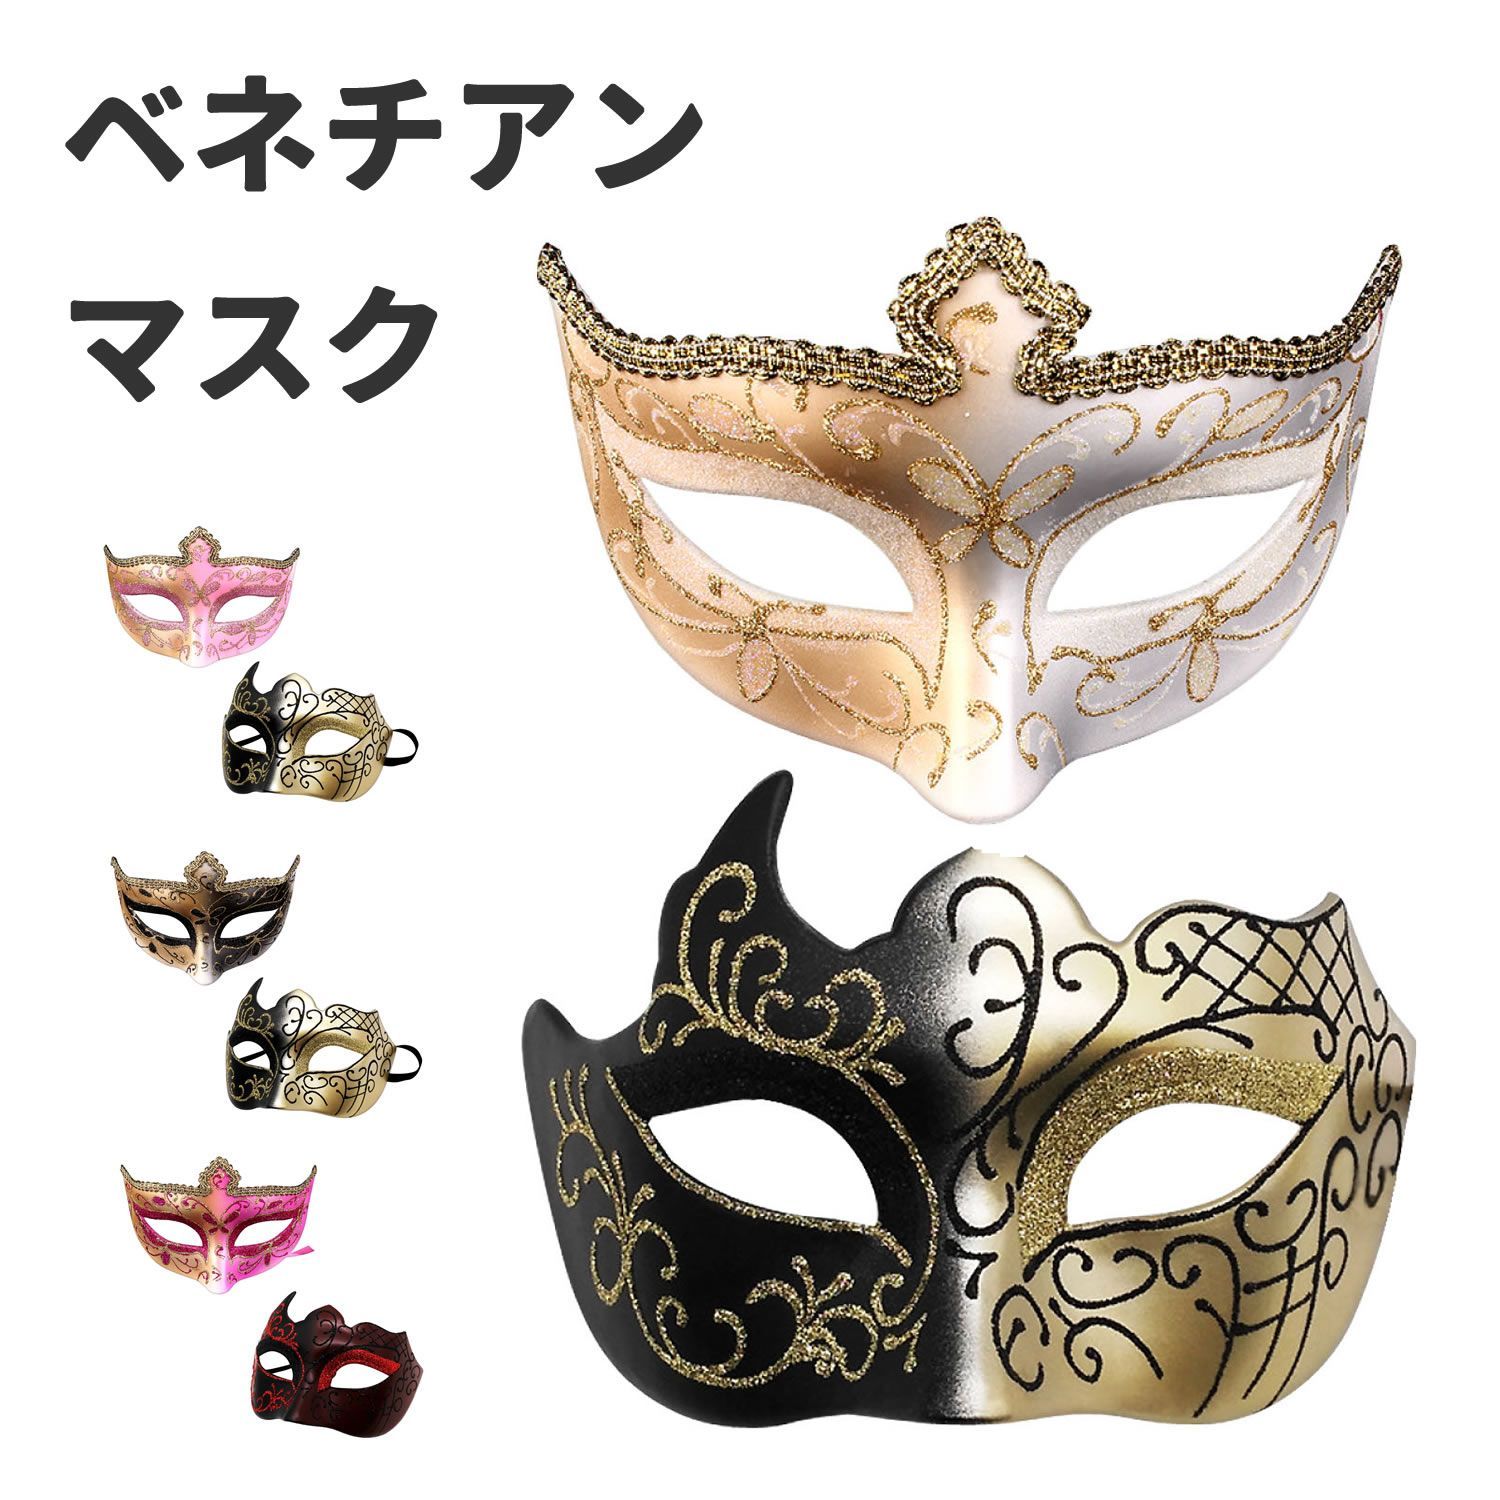 仮面 ベネチアンマスク 仮面舞踏会 マスク お面 変装 仮装 ダンス 2個 セット ブラックとブラック＆ゴールド